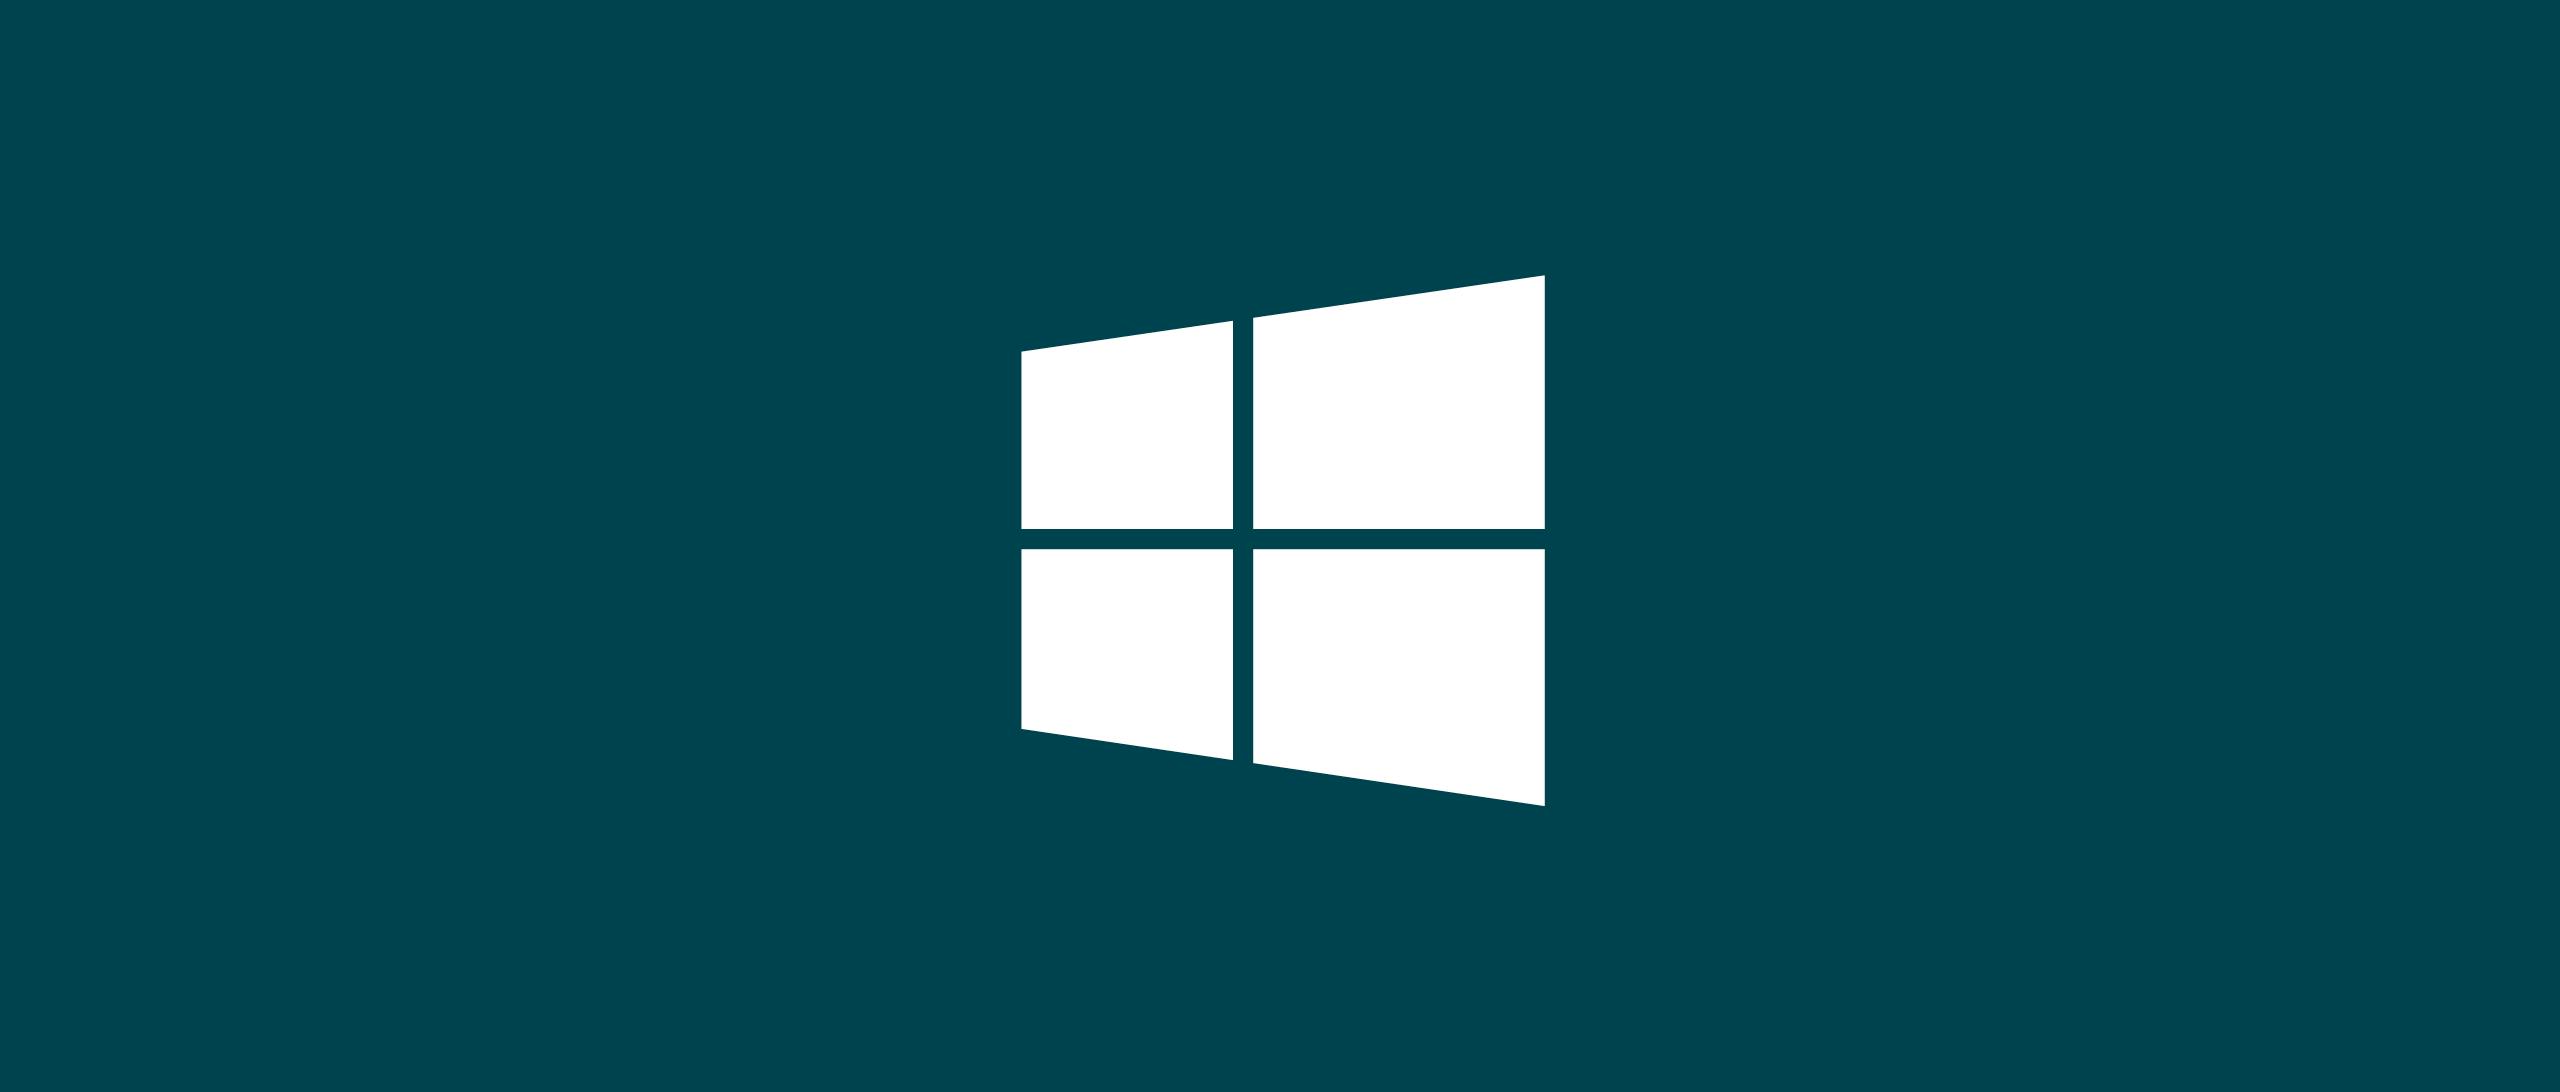 Майкрософт 10. Виндовс 10 рабочий стол Microsoft Windows. ОС Microsoft Windows 10. Флажок Windows 10. Универсальный windows